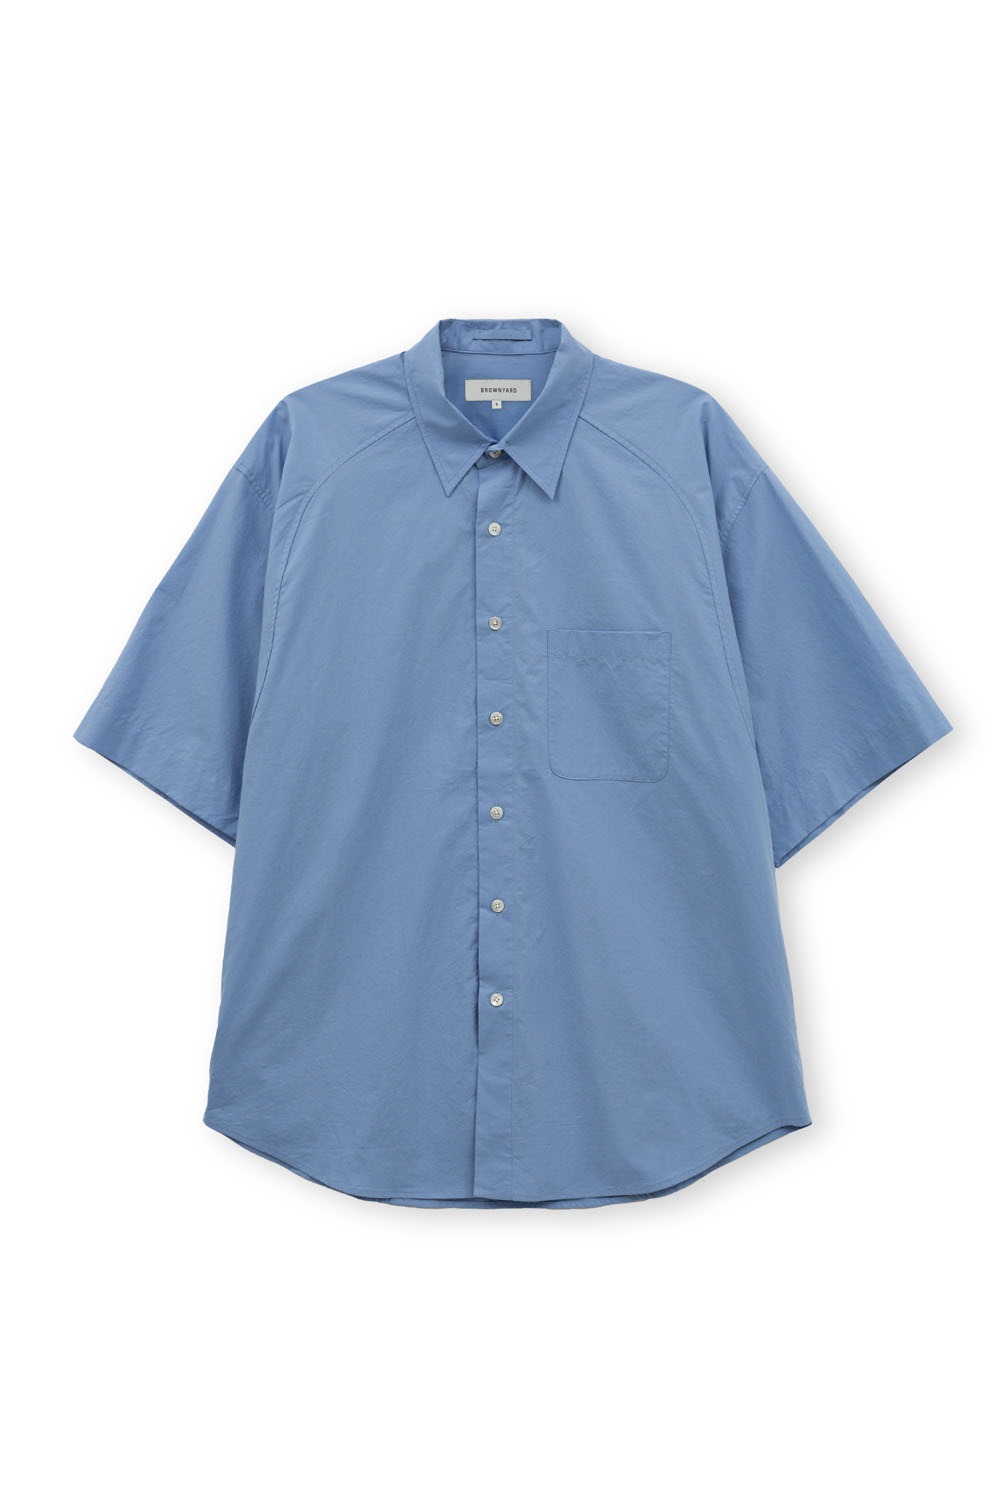 (5월 7일 예약발송) Half Shirt-Sax Blue